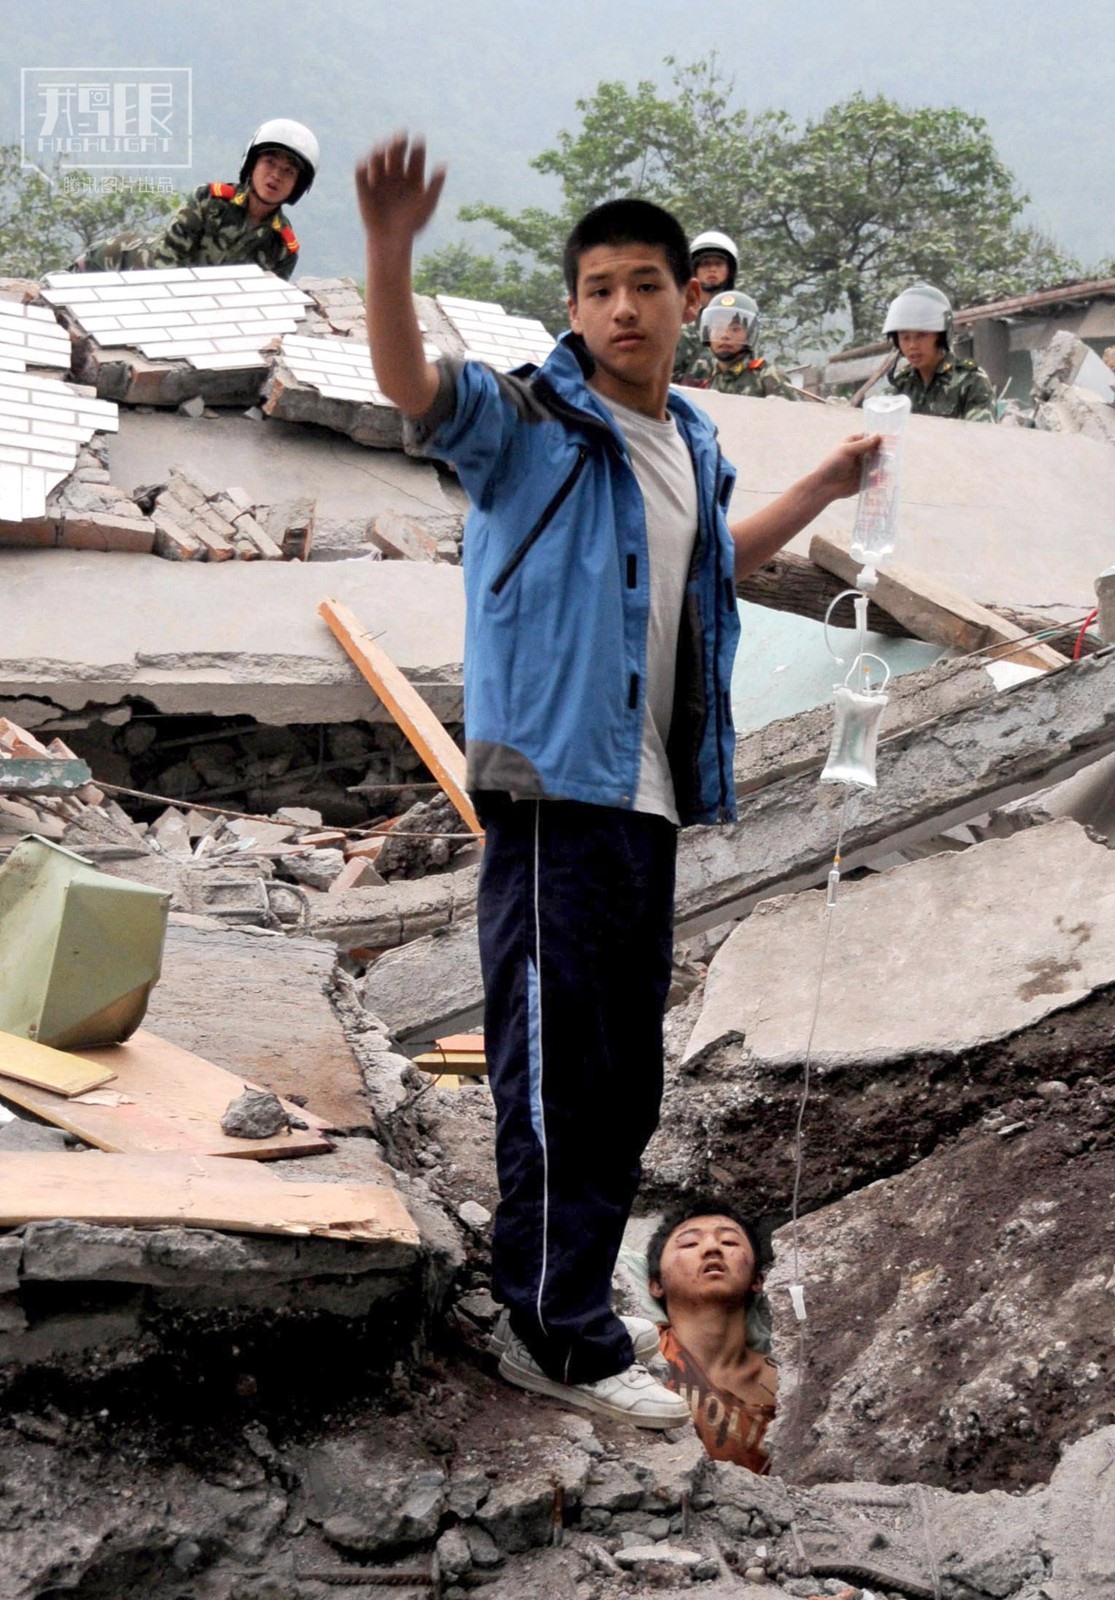 Ngày 13.5, cậu bé Liêu Ba bị vùi trong đống đổ nát tại trung tâm khu vực động đất và bị thương nghiêm trọng. Bạn thân của cậu, Lý Dương, vẫn luôn đứng cầm bình truyền dịch thay cậu. Sau vụ động đất, Liêu Ba được cứu sống. Ảnh: Theo Reuters